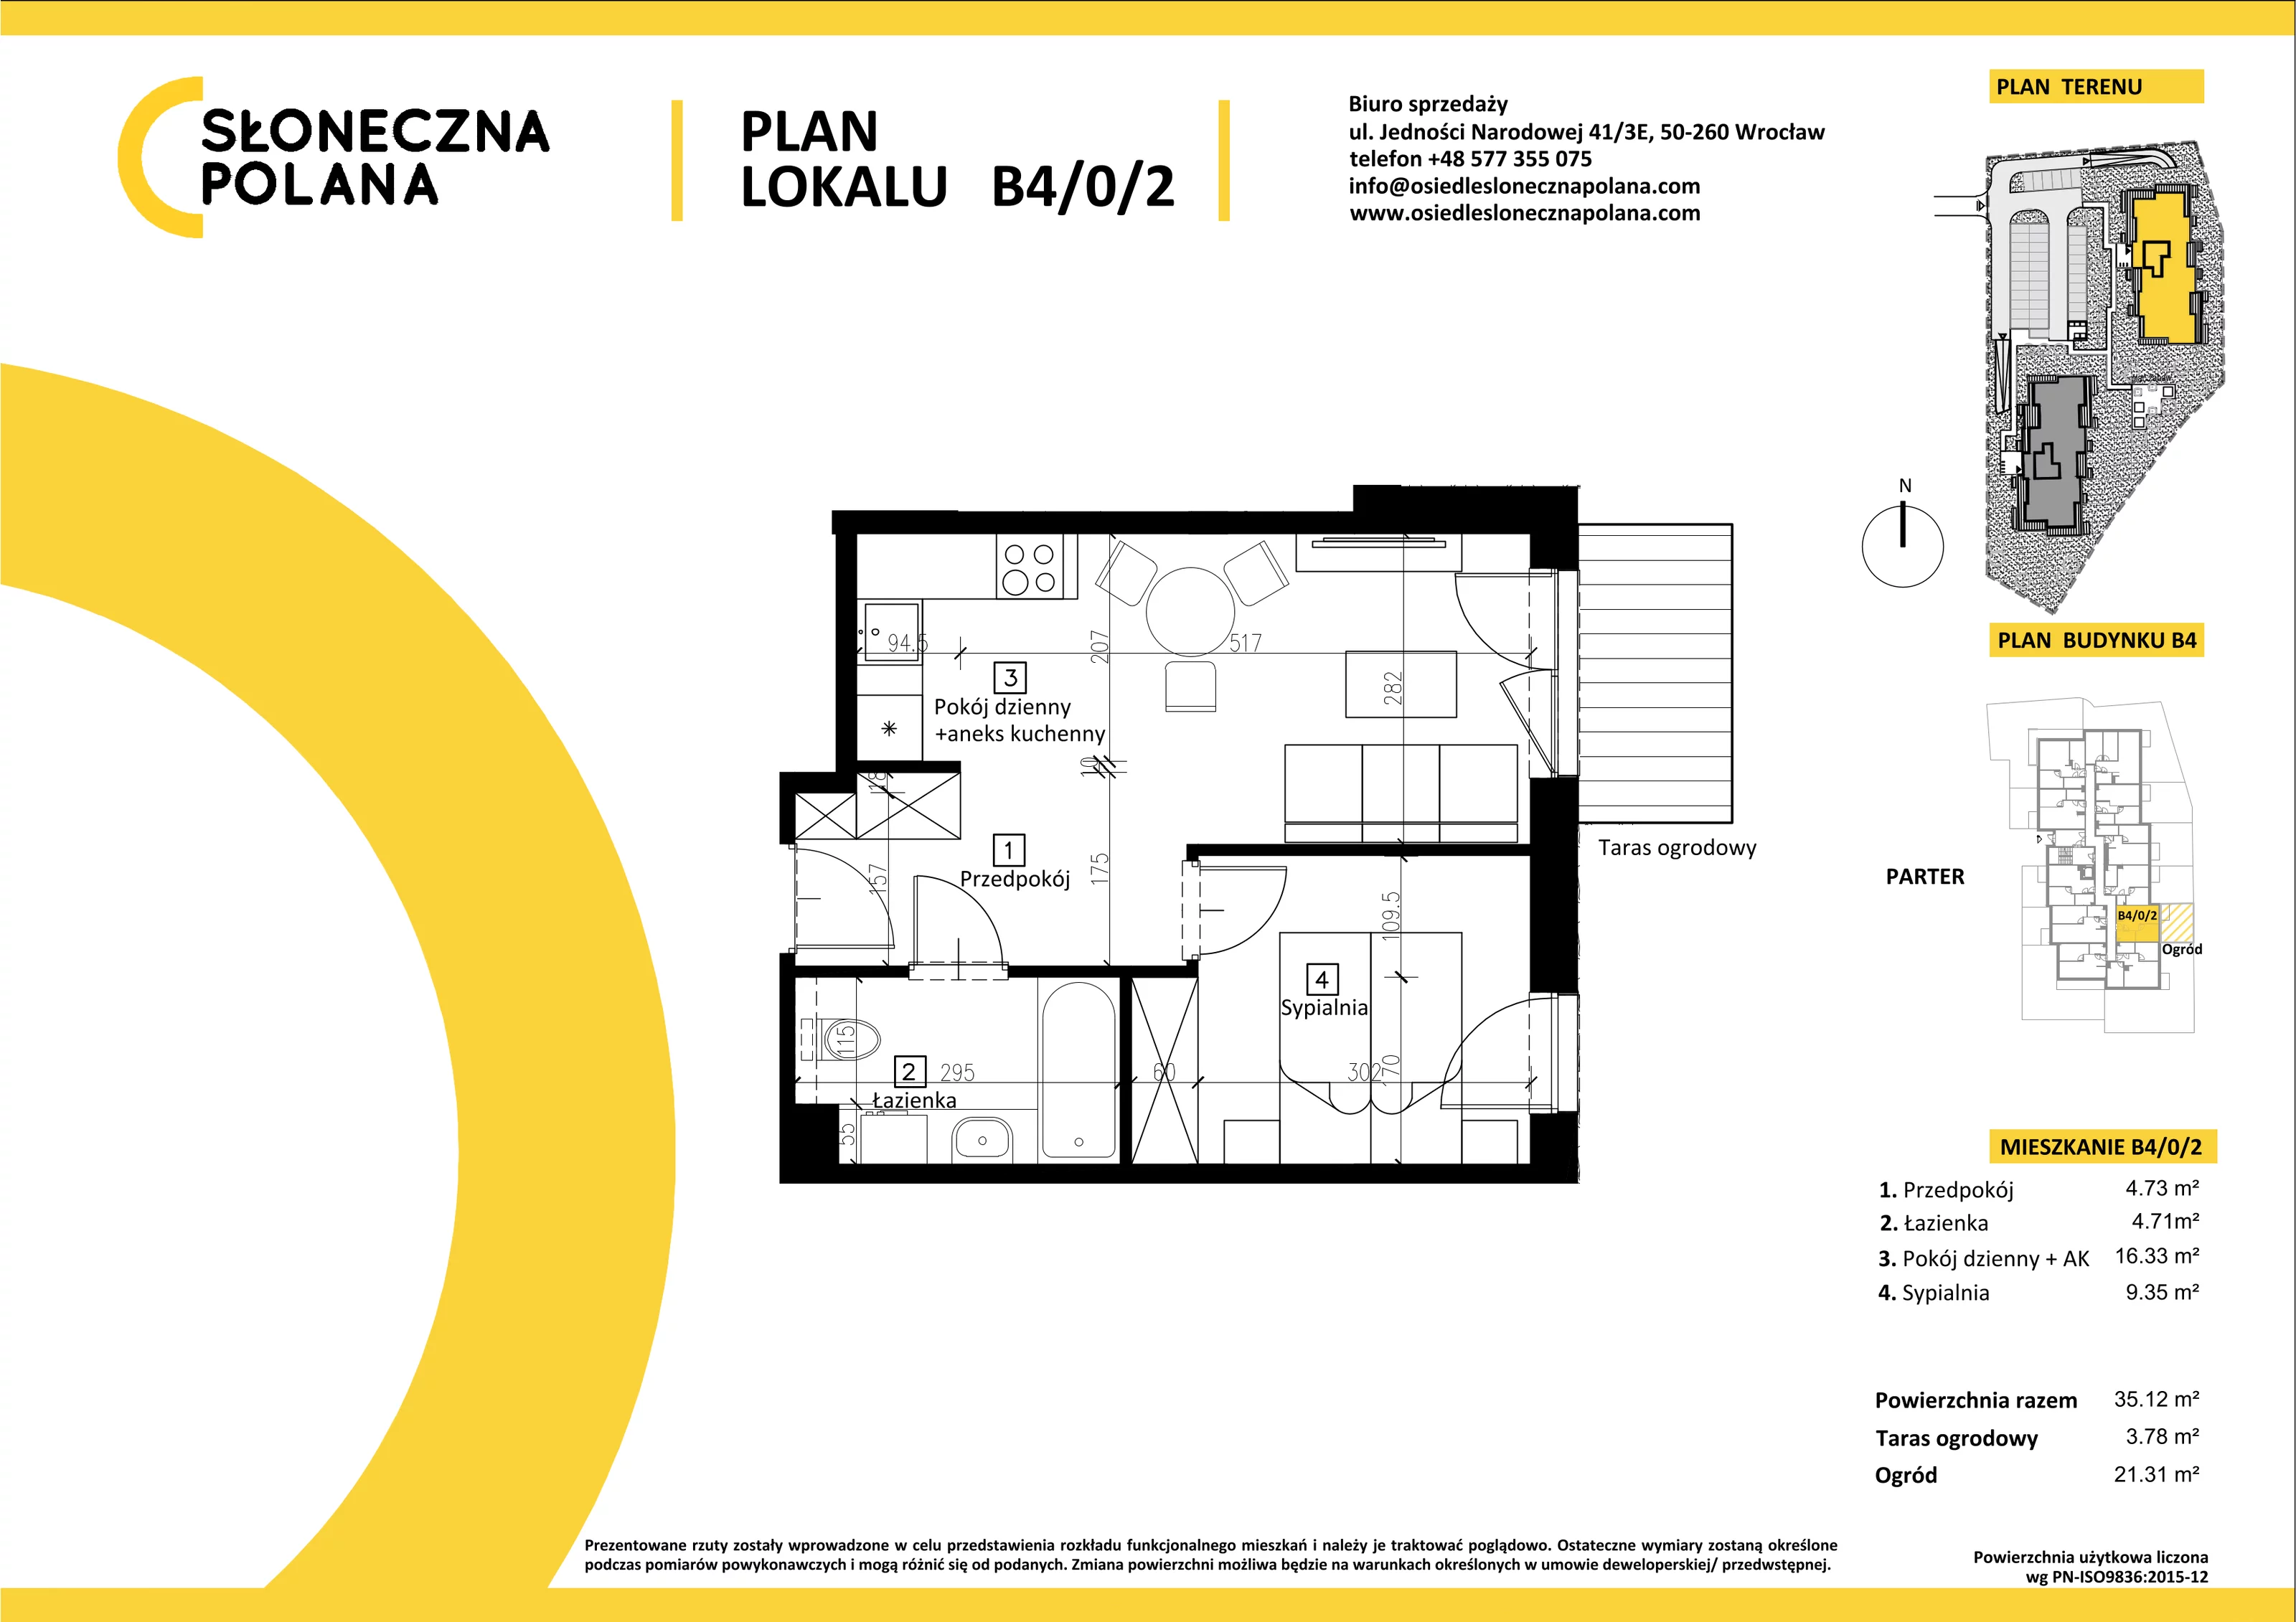 Mieszkanie 35,12 m², parter, oferta nr B4/0/2, Słoneczna Polana, Kudowa-Zdrój, ul. Bluszczowa